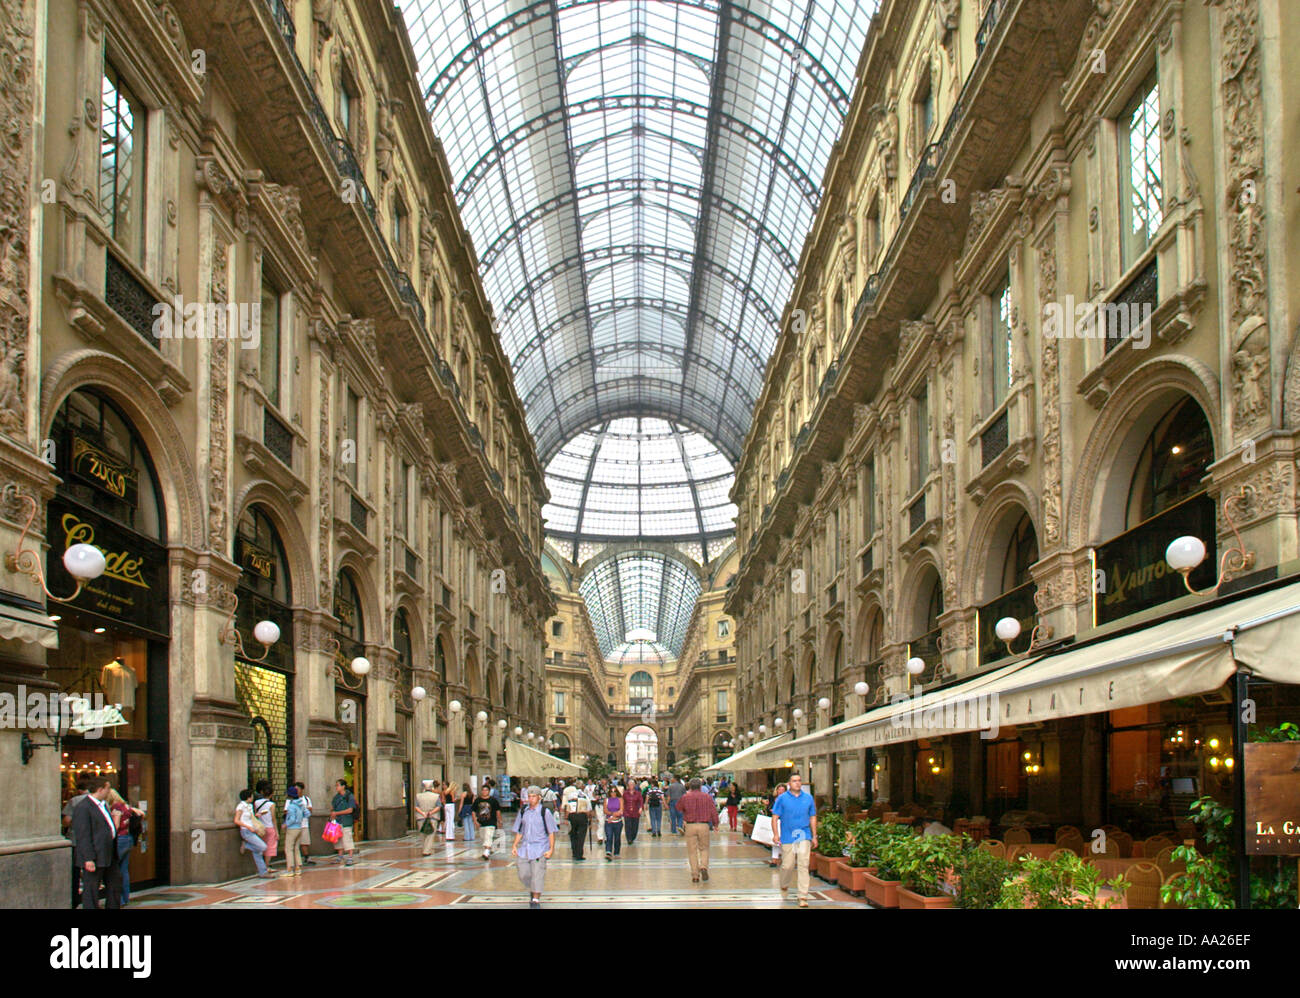 Geschäfte und Restaurants in der Galleria Vittorio Emanuele II, Mailand, Italien Stockfoto